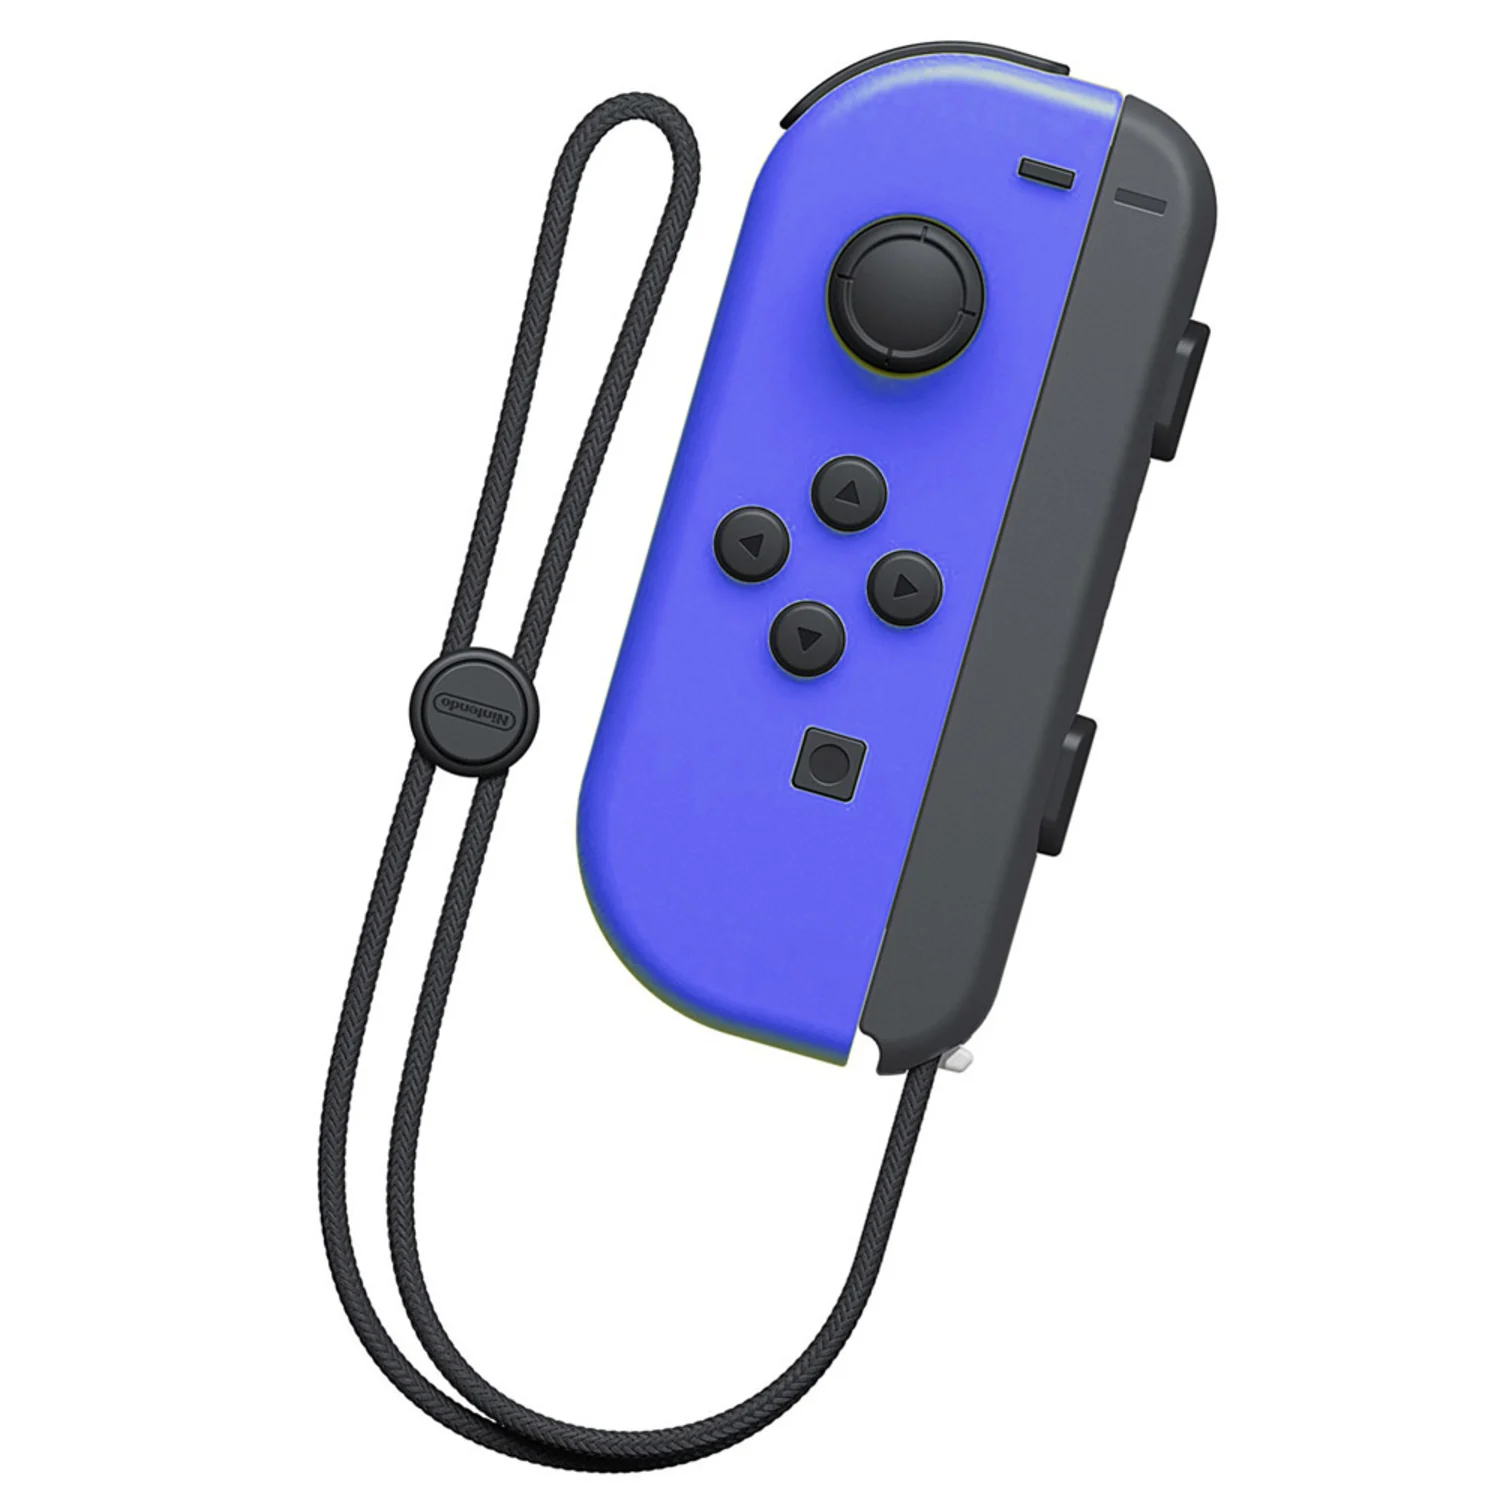 Controle Joy-Con para Nintendo Switch L e R - Azul e amarelo